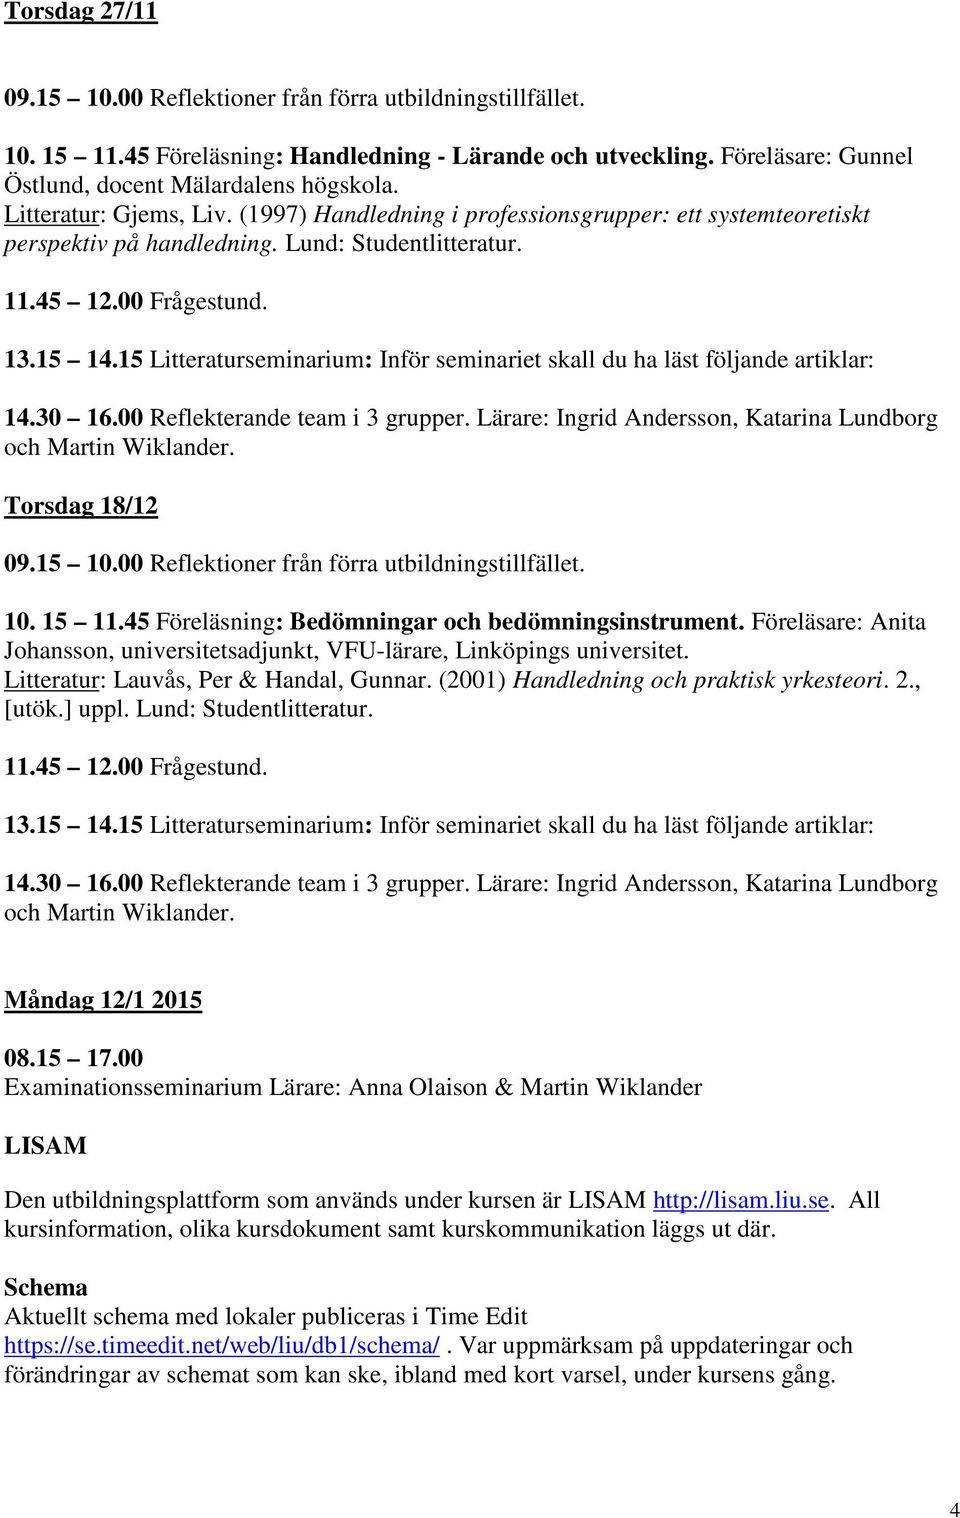 Föreläsare: Anita Johansson, universitetsadjunkt, VFU-lärare, Linköpings universitet. Litteratur: Lauvås, Per & Handal, Gunnar. (2001) Handledning och praktisk yrkesteori. 2., [utök.] uppl.